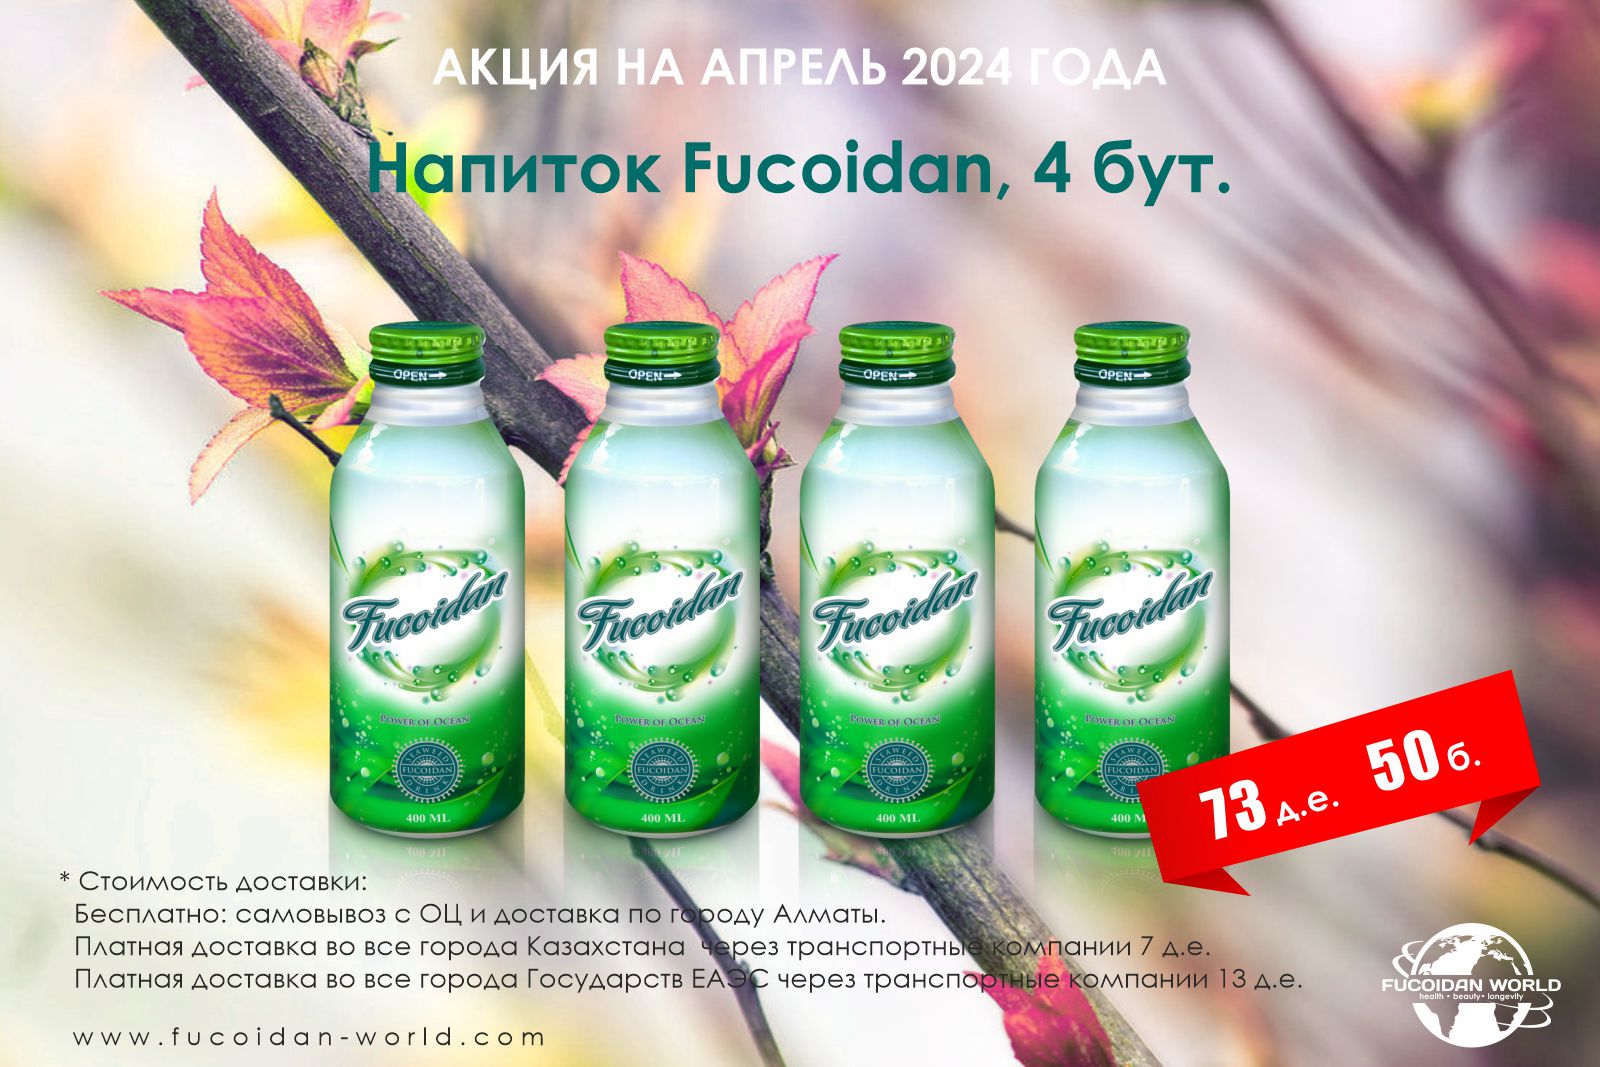 Акция на 4 бутылочки фирменного напитка «Fucoidan» + 8 д. е. скидка